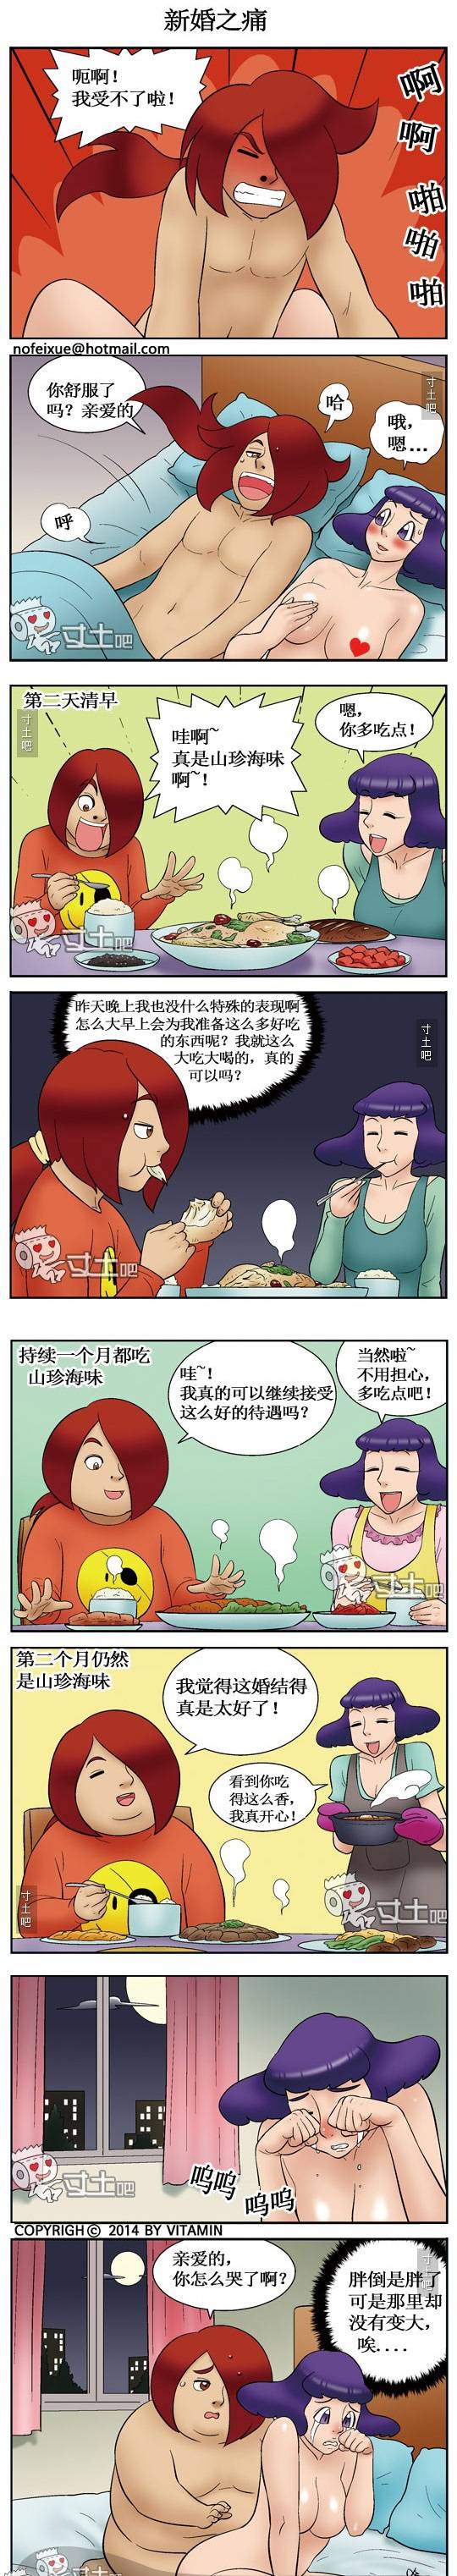 日本邪恶漫画色系图片 新婚之痛